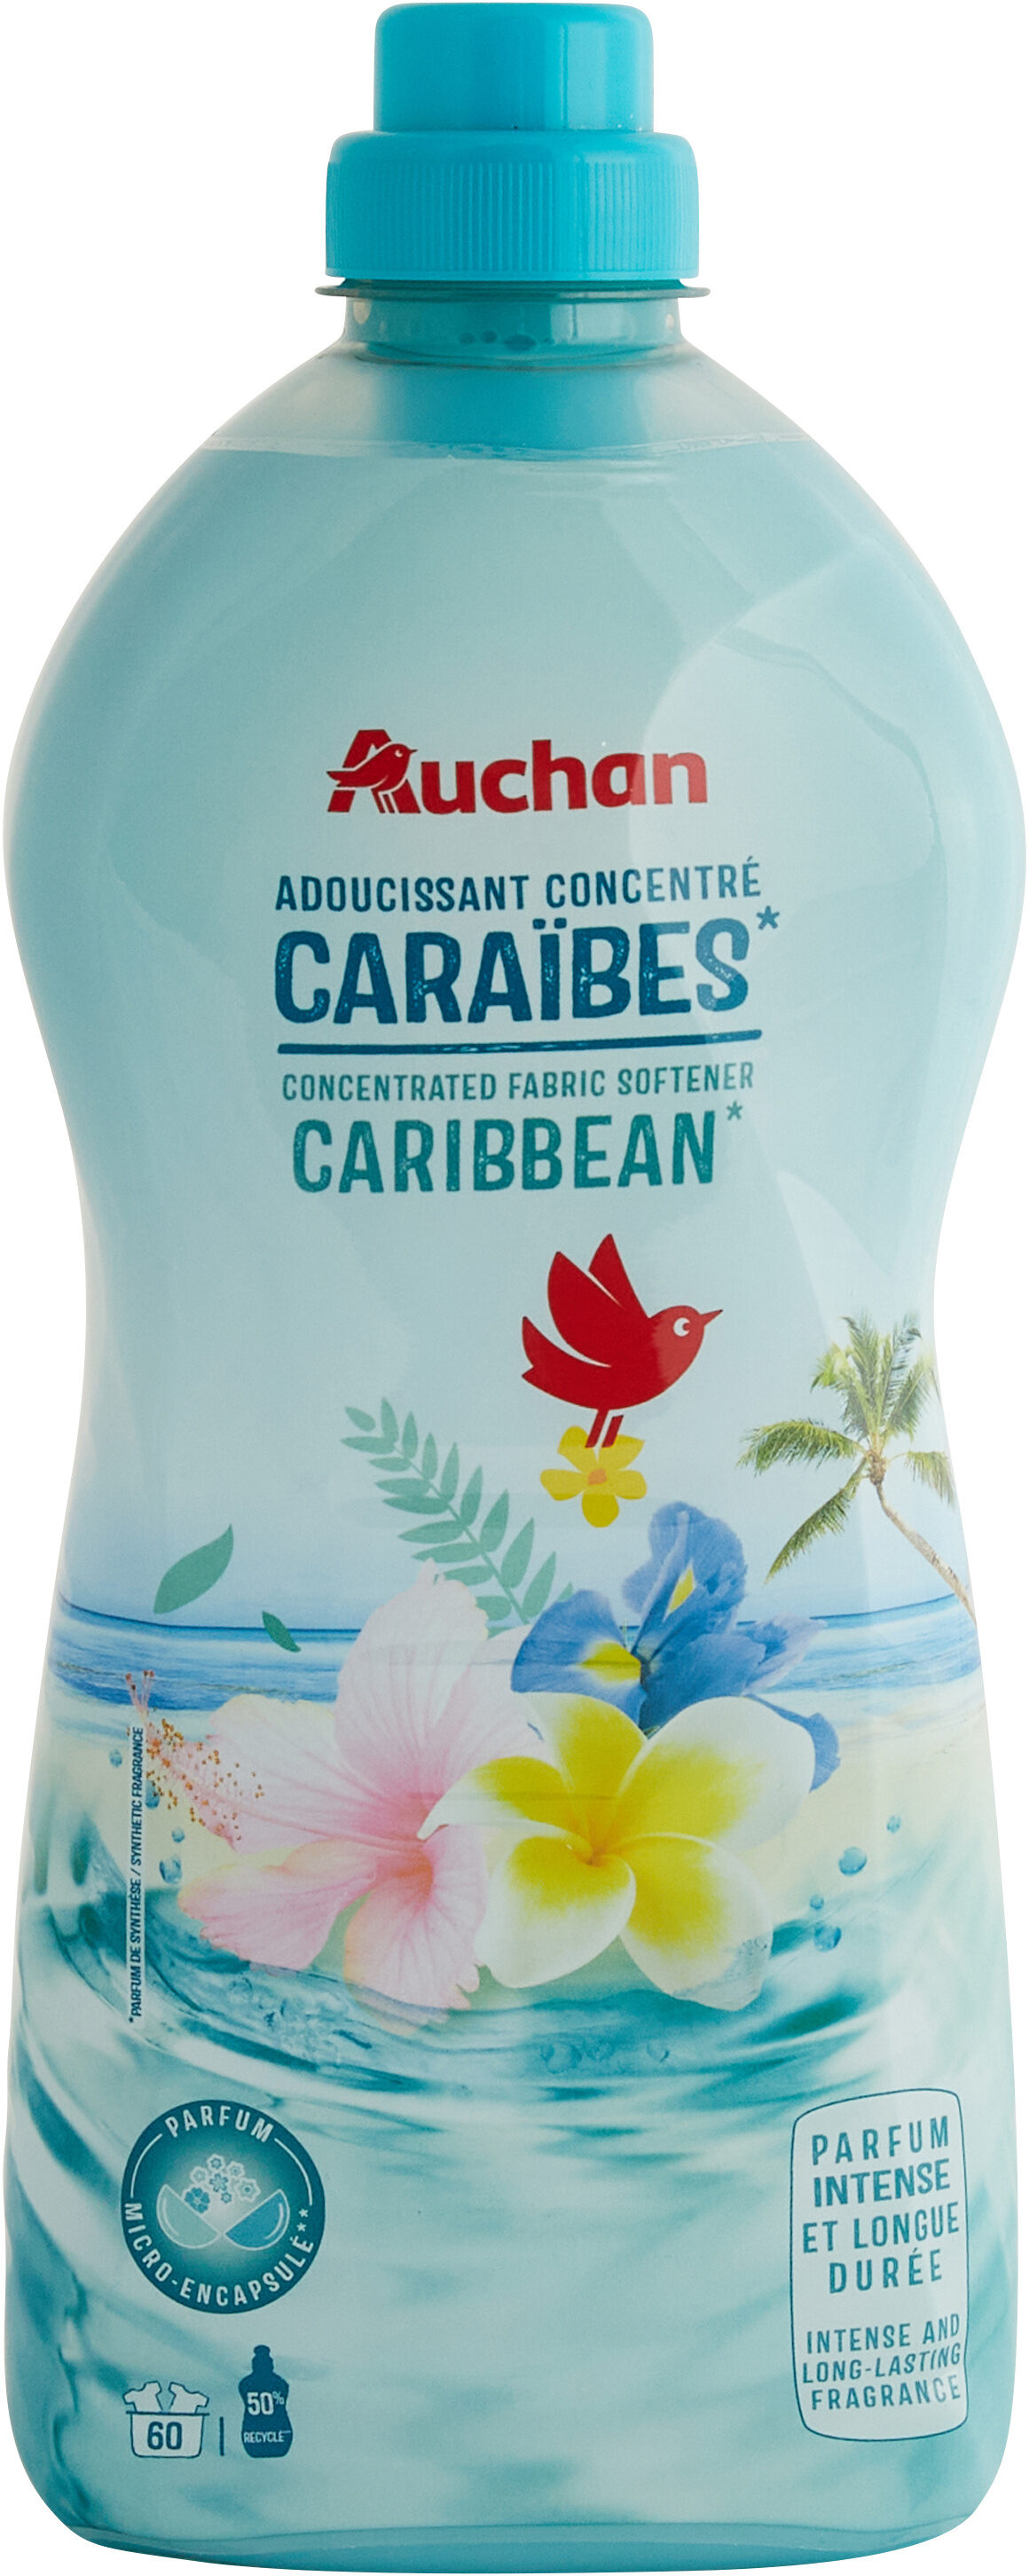 Adoucissant concentré Caraibes - Product - en